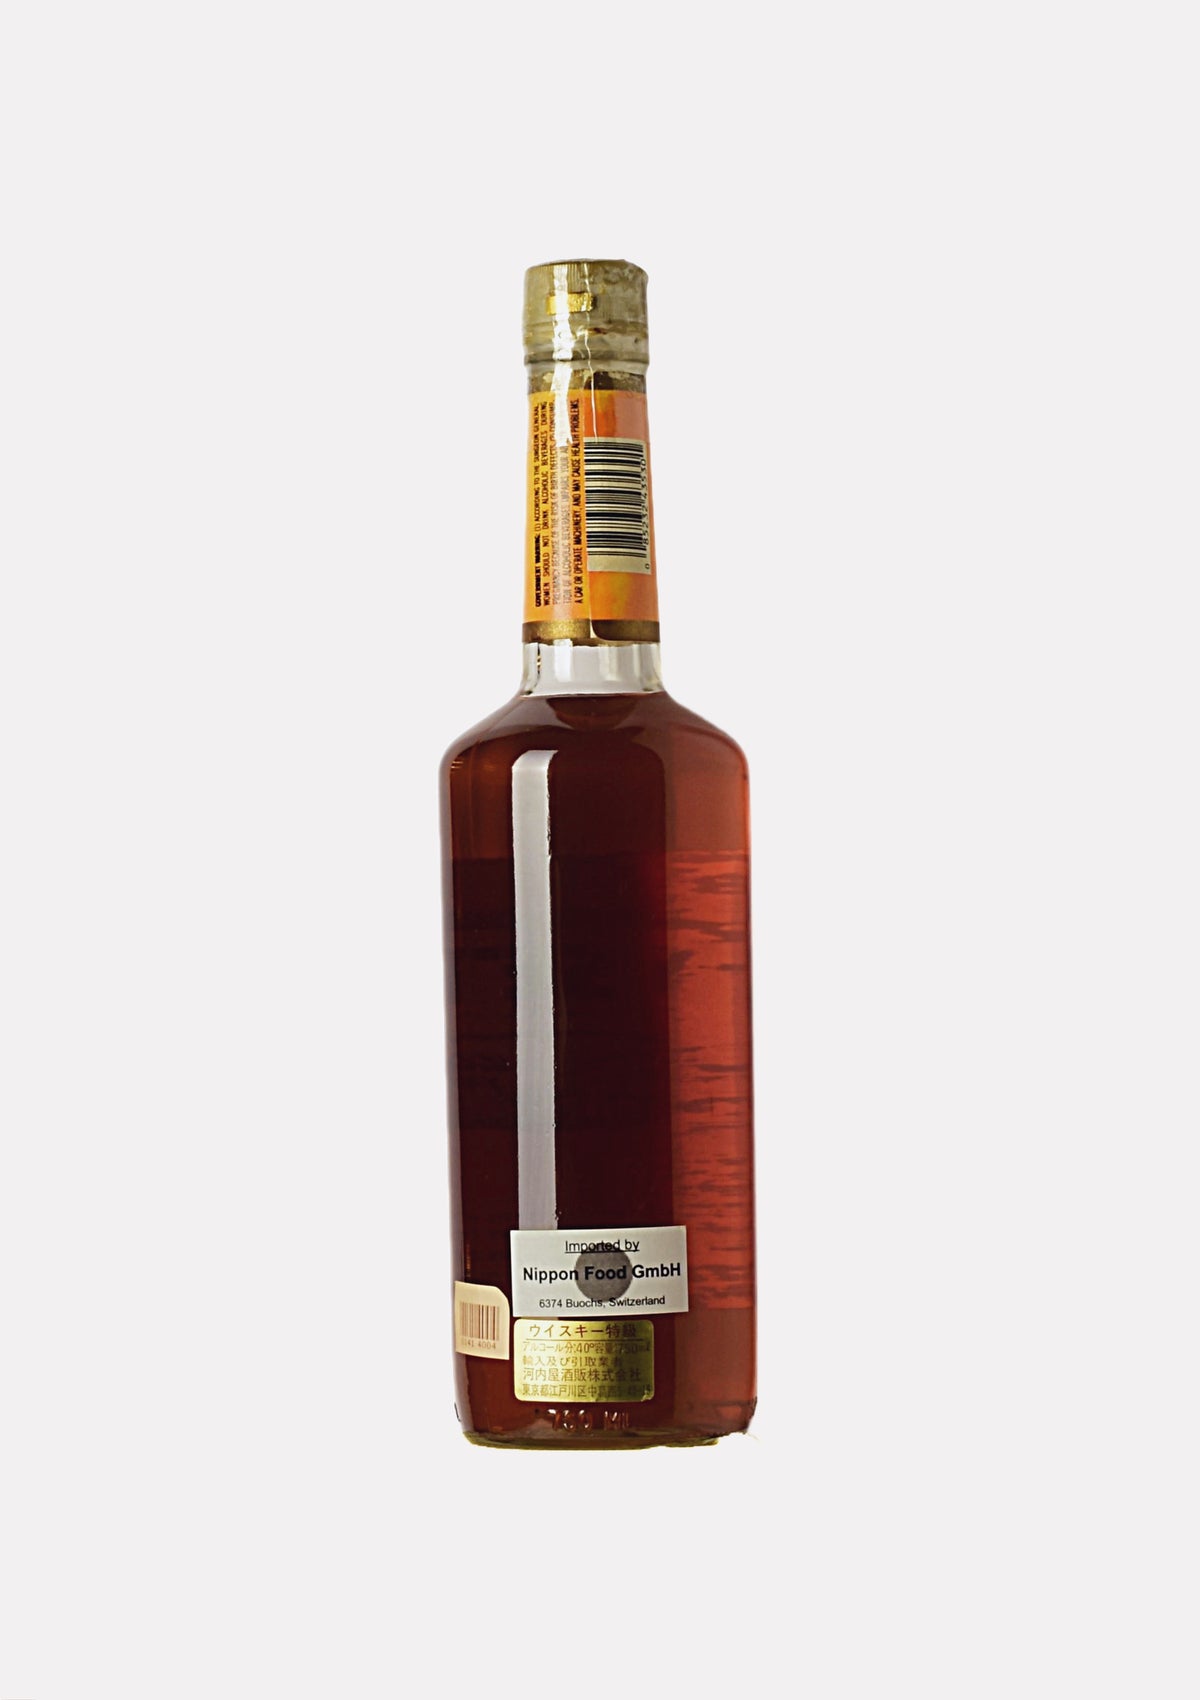 Old Setter Straight Bourbon Whiskey